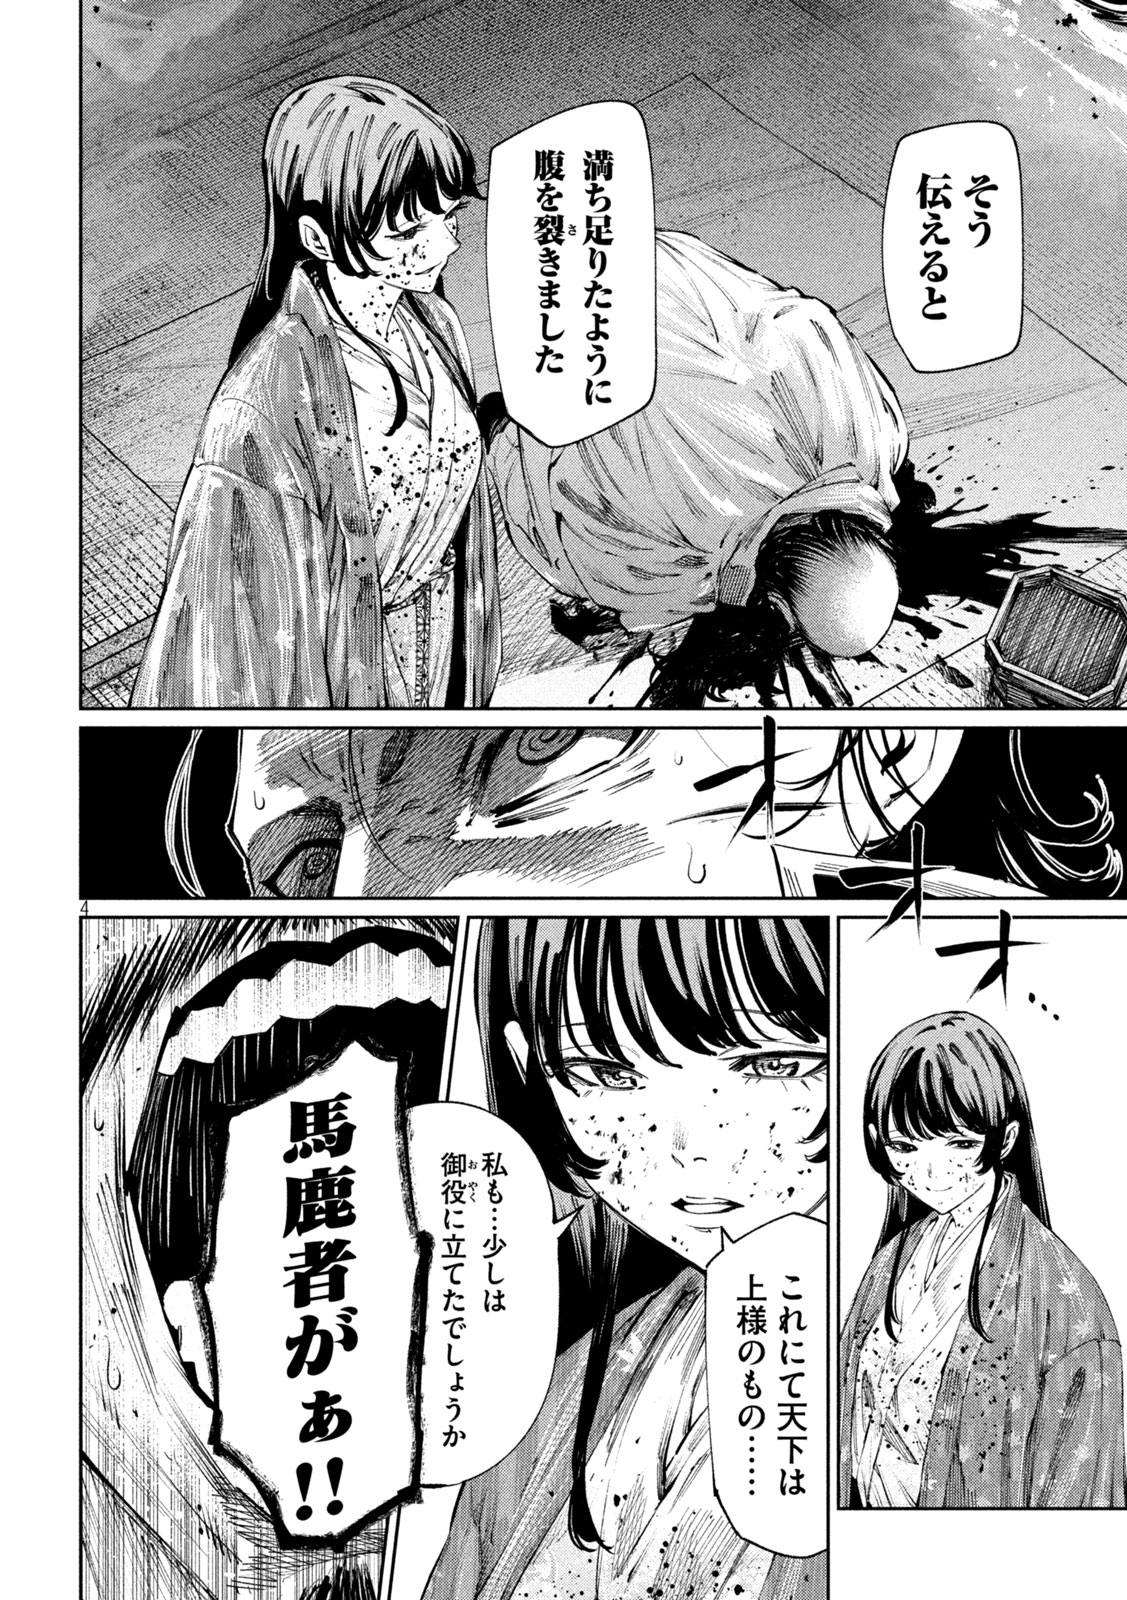 Nando toki o kurikaeshitemo Honnouji ga moerunjaga! - Chapter 119 - Page 4